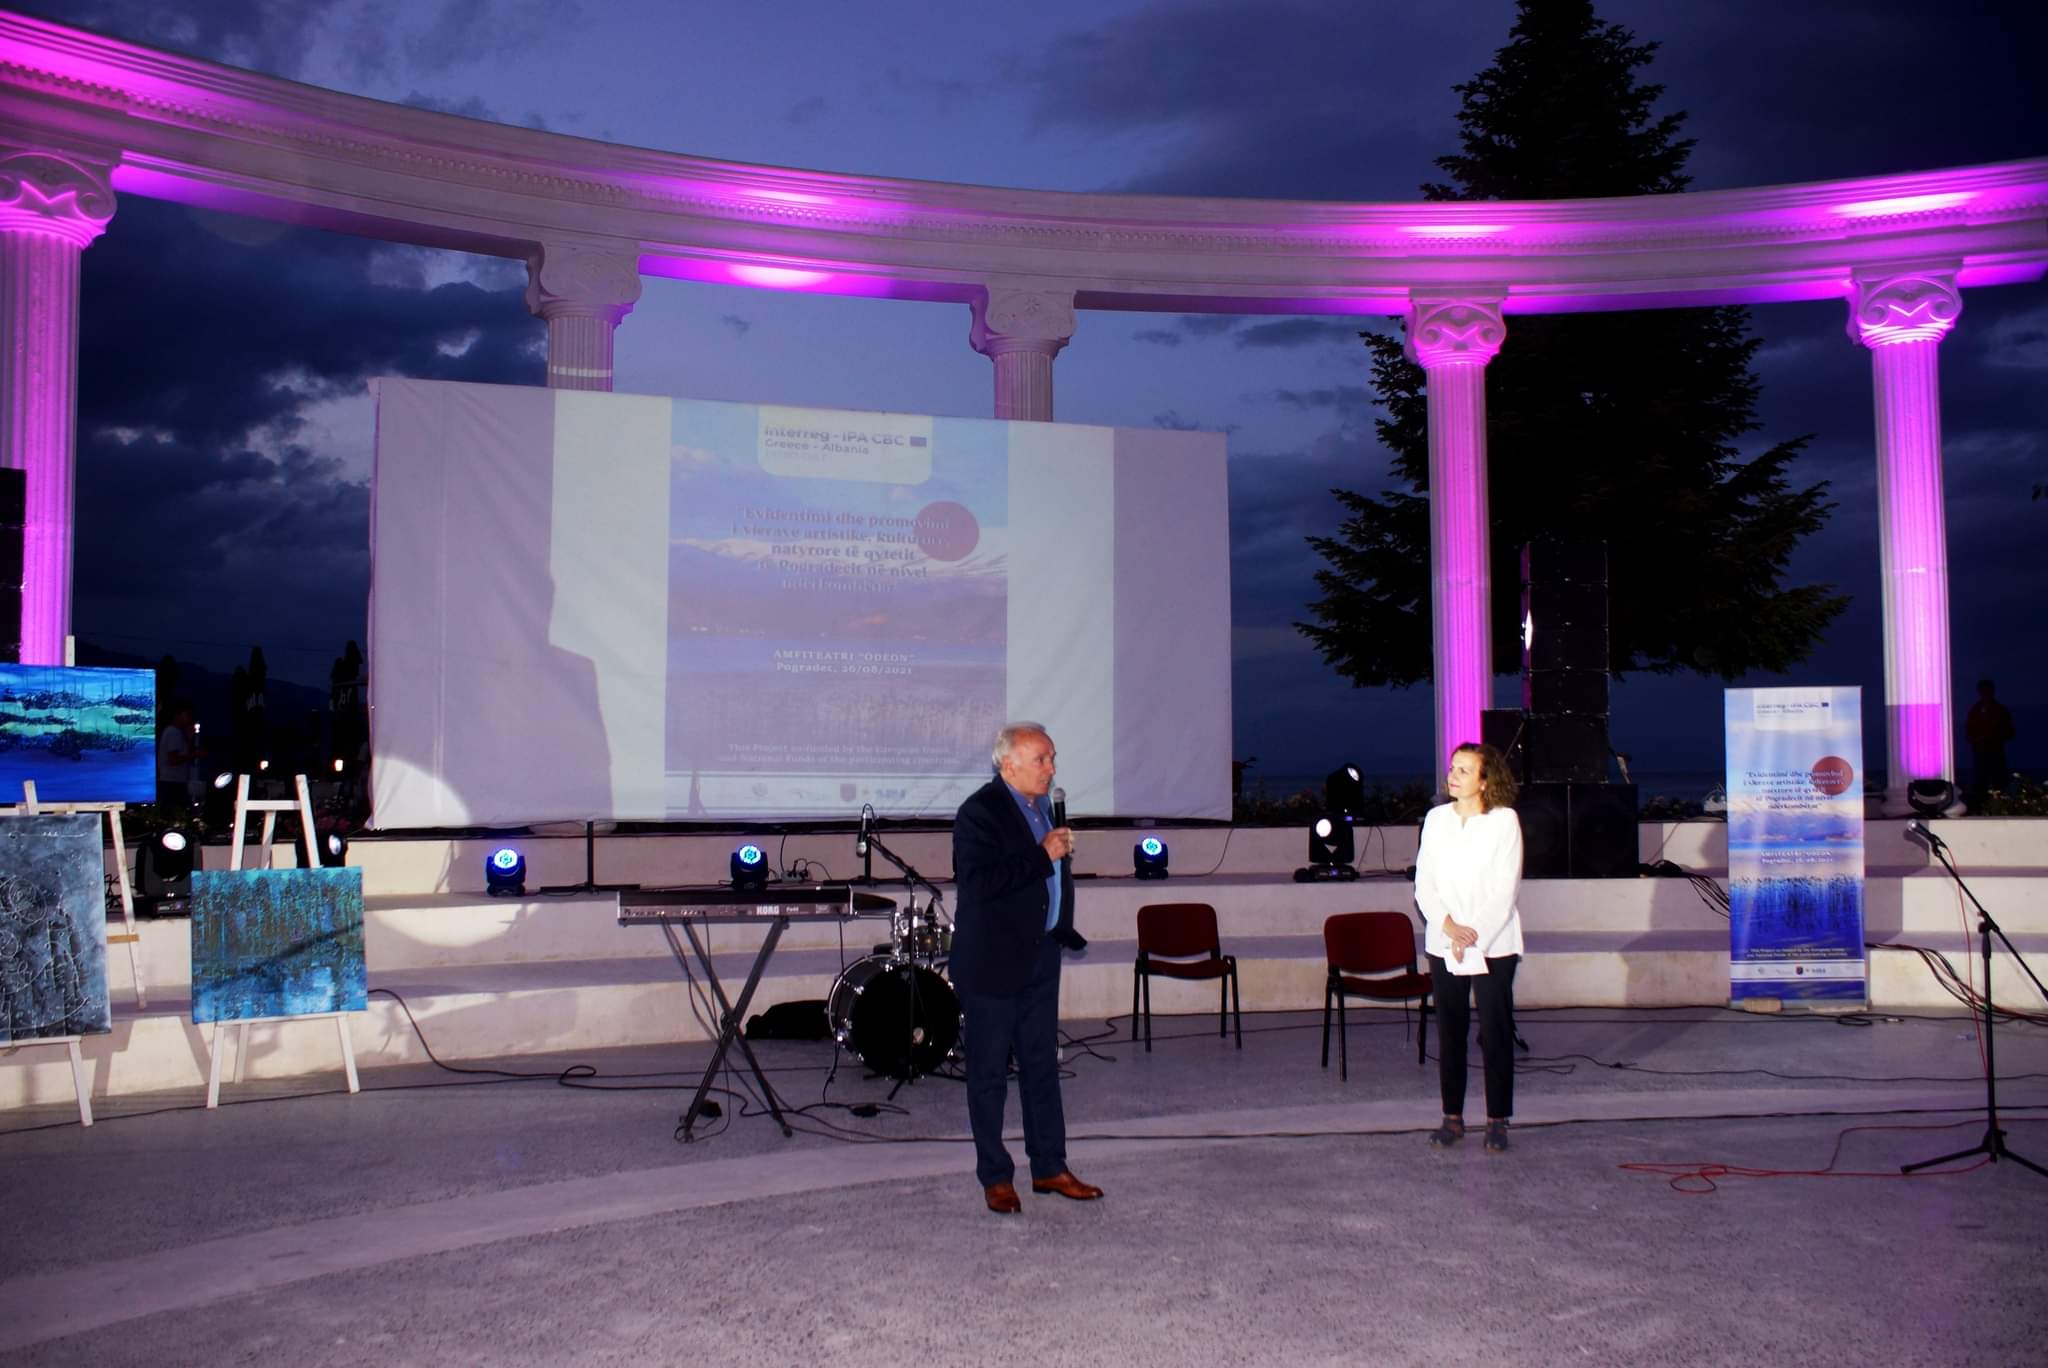 “Evidentimi dhe promovimi i vlerave artistike, kulturore, natyrore të qytetit të Pogradecit në nivel ndërkombëtar”